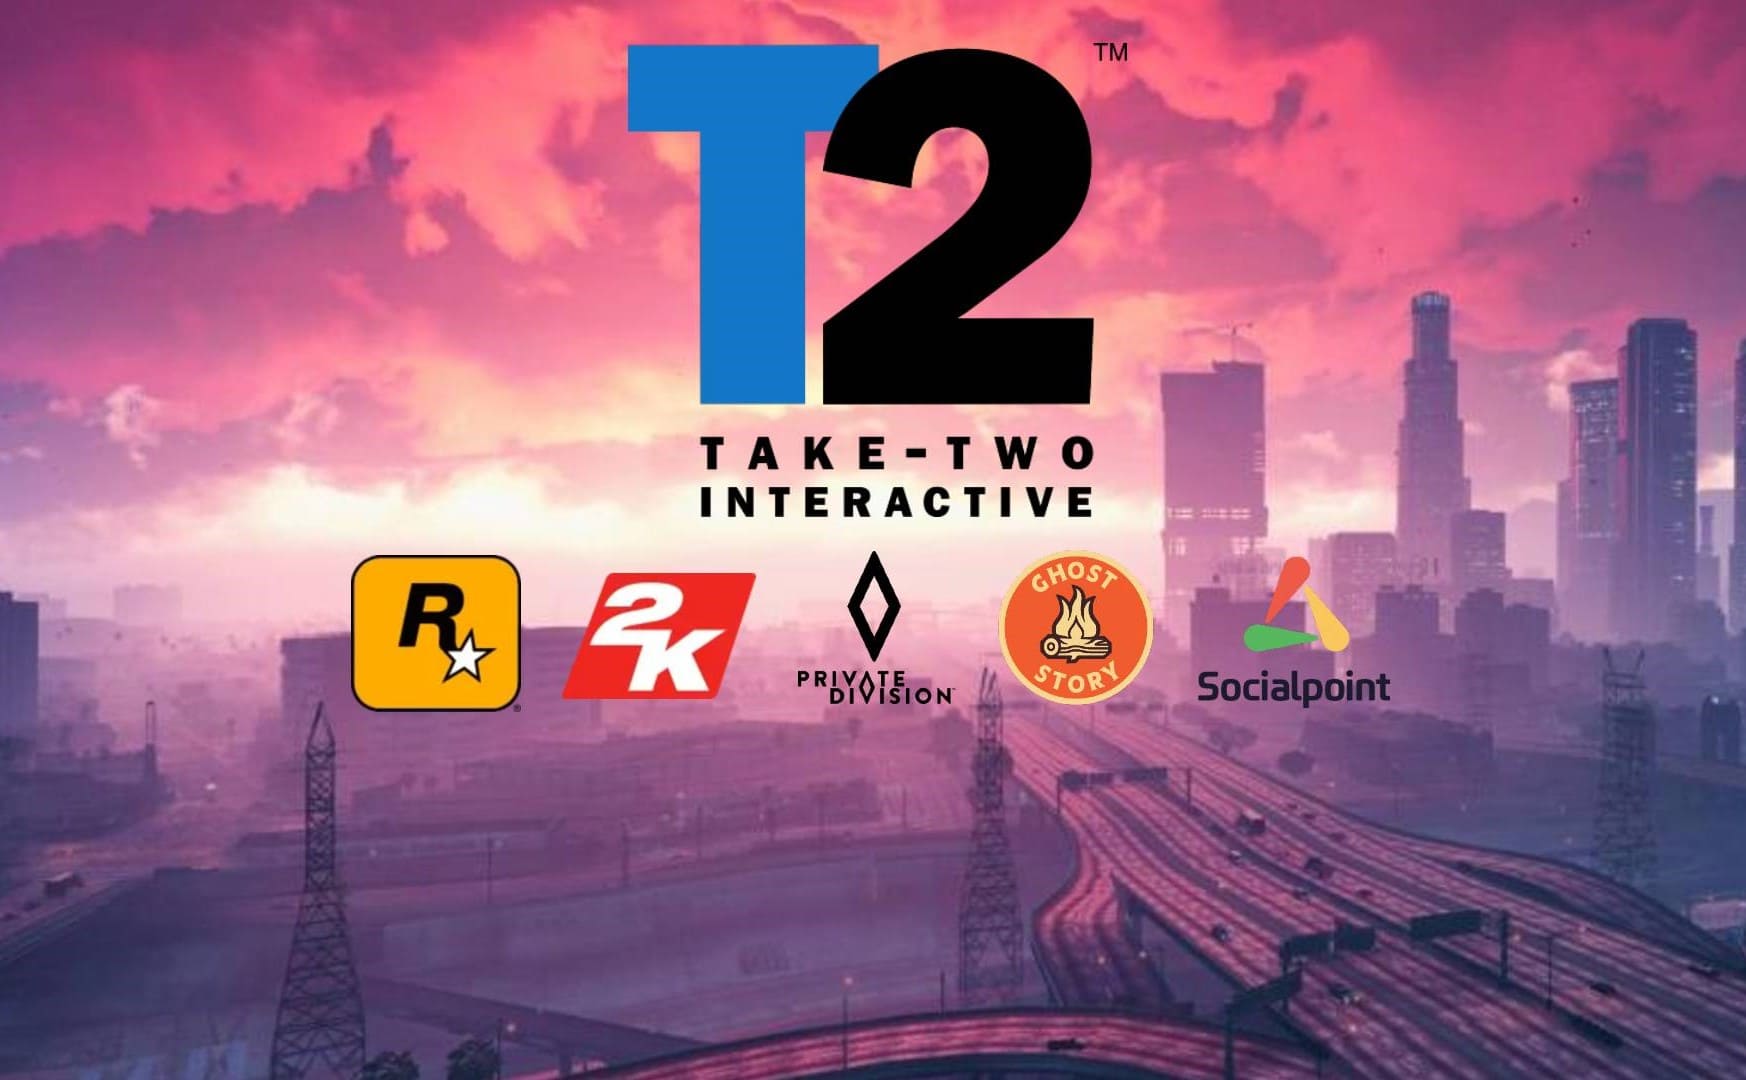 Take-Two ha acquisito i diritti del dominio gta6.com